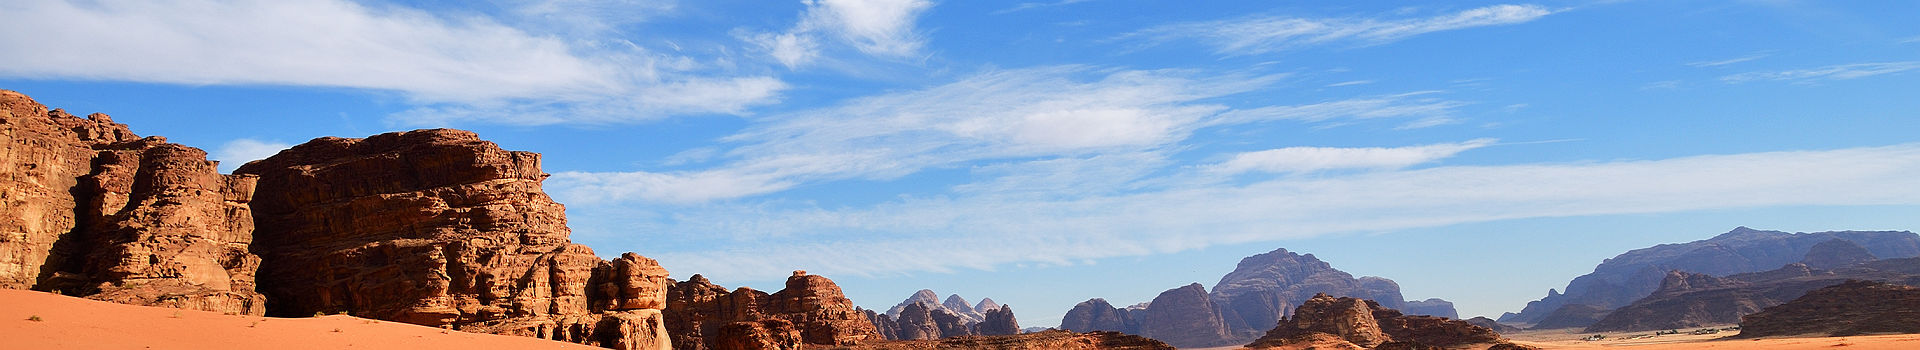 Jordanie - Désert de Wadi Rum